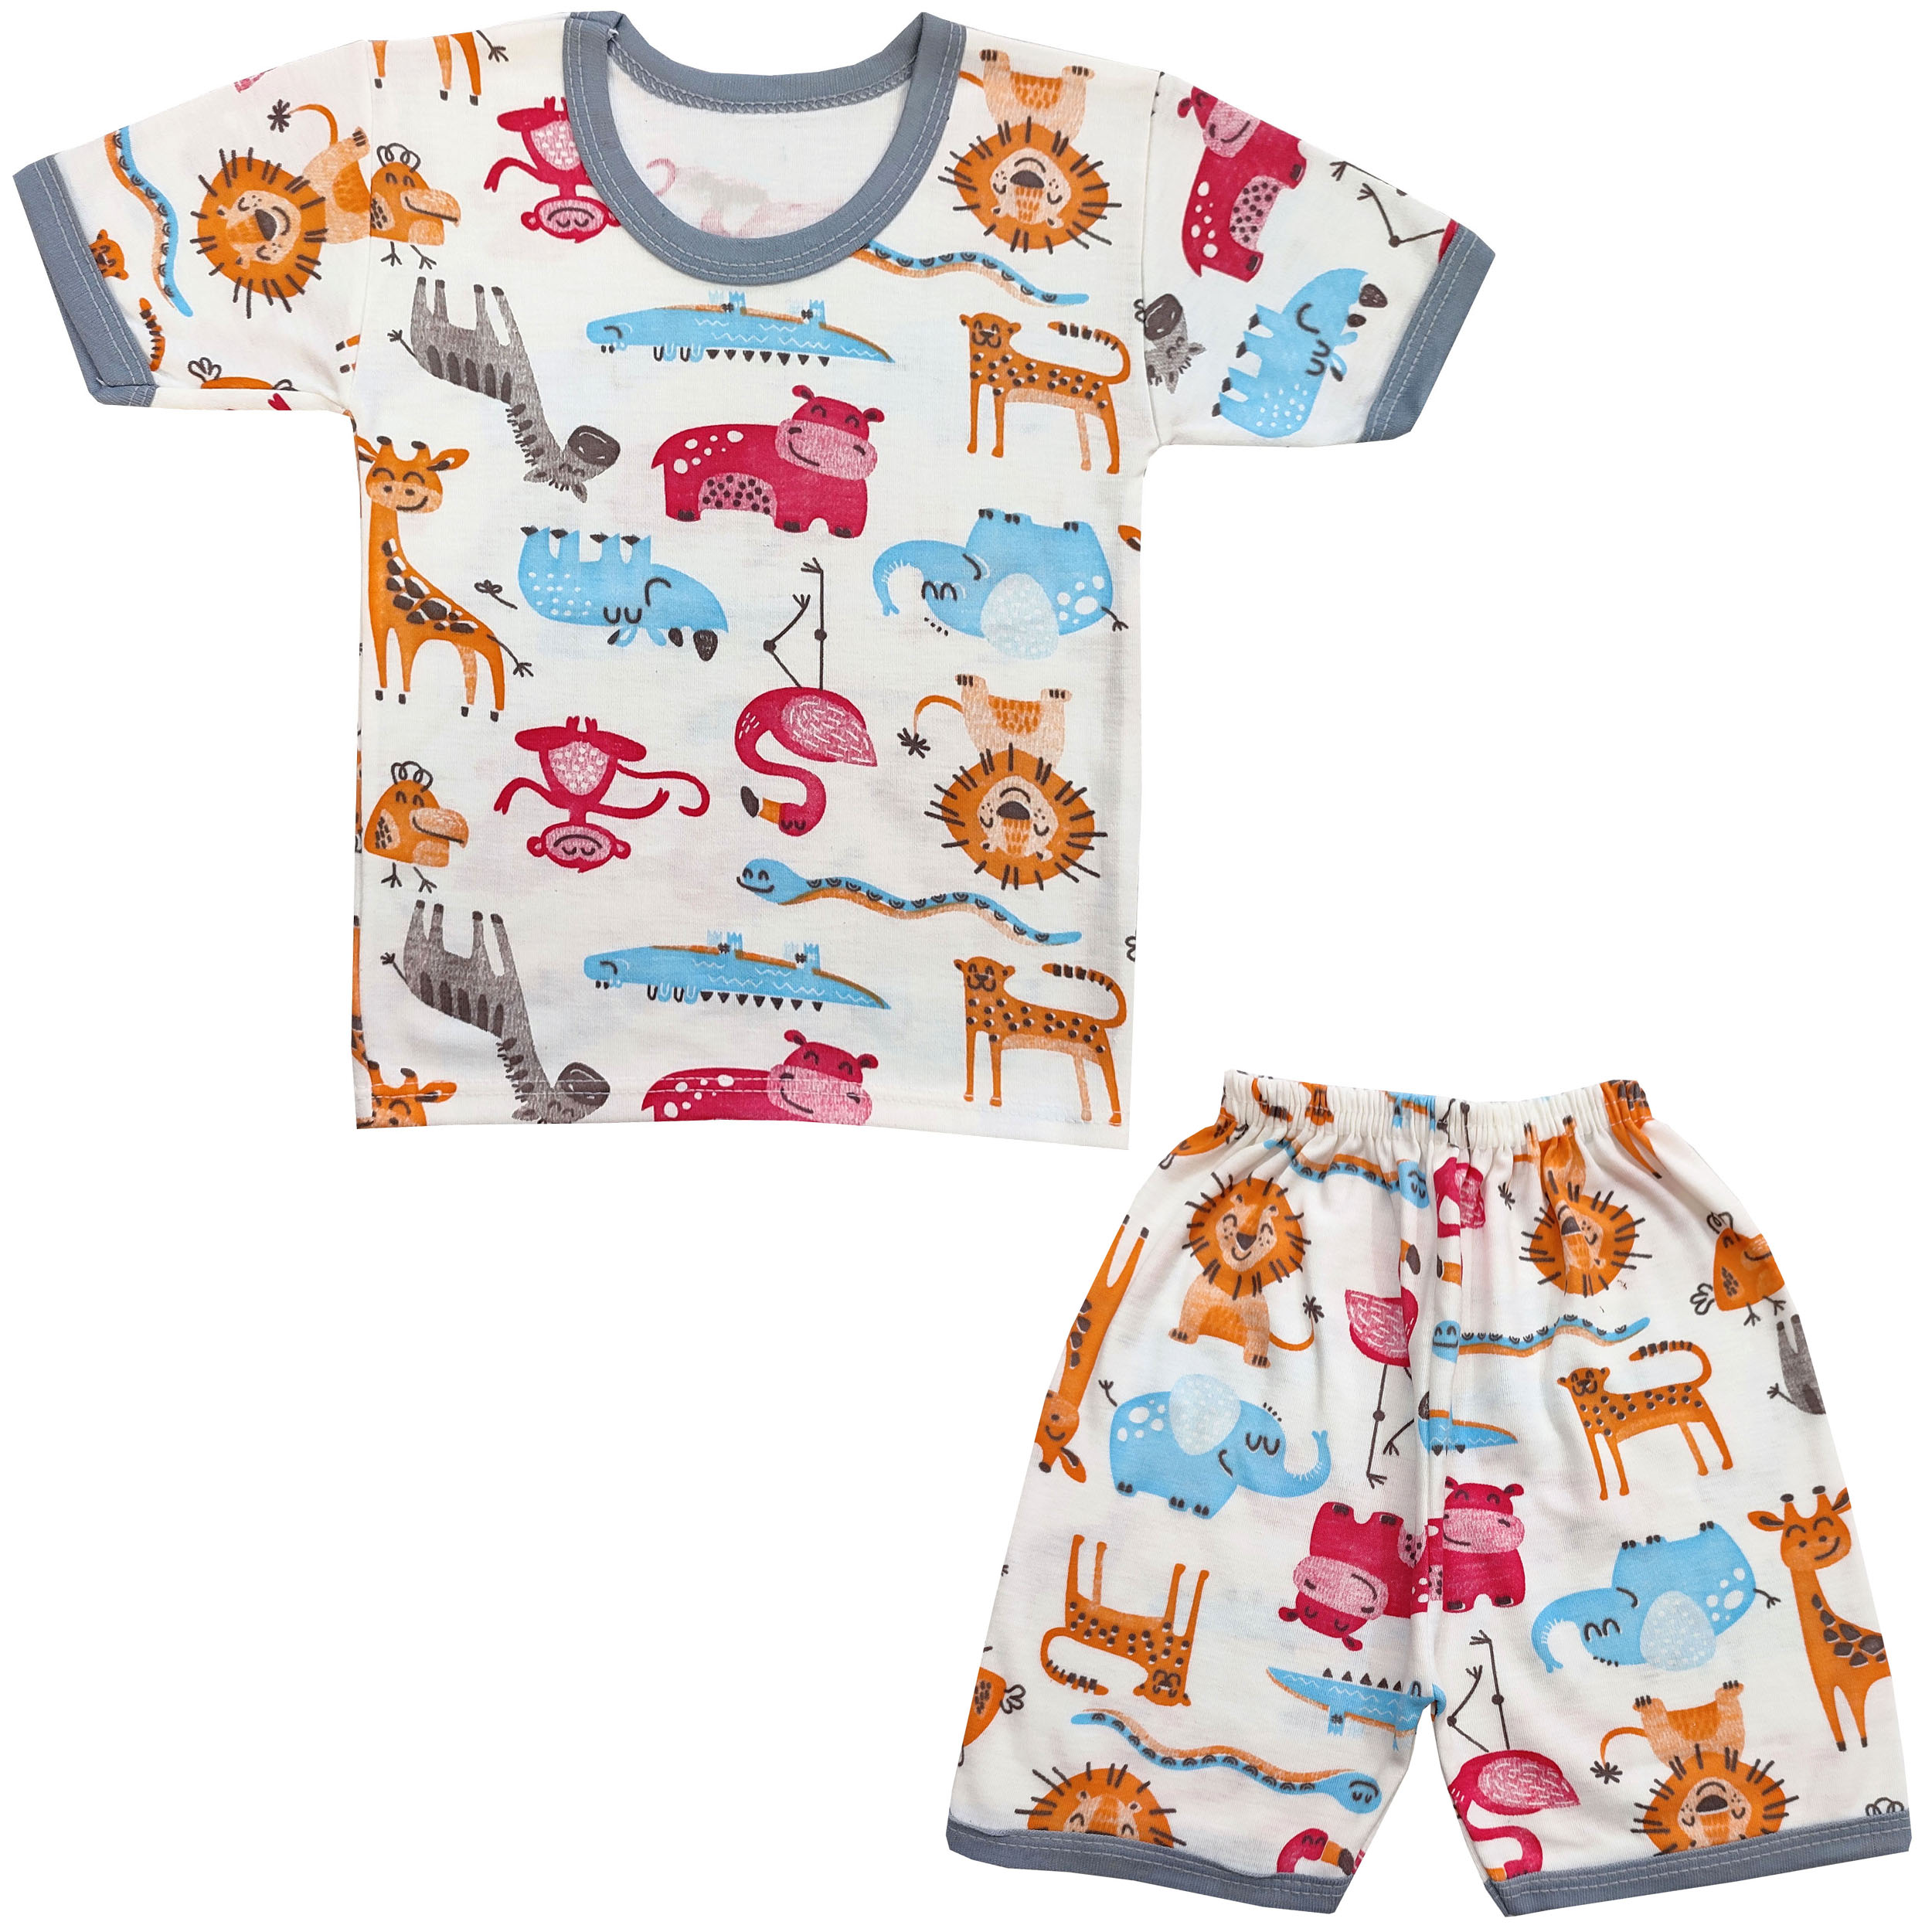 ست تی شرت و شلوارک بچگانه مدل حیوانات کد 3684